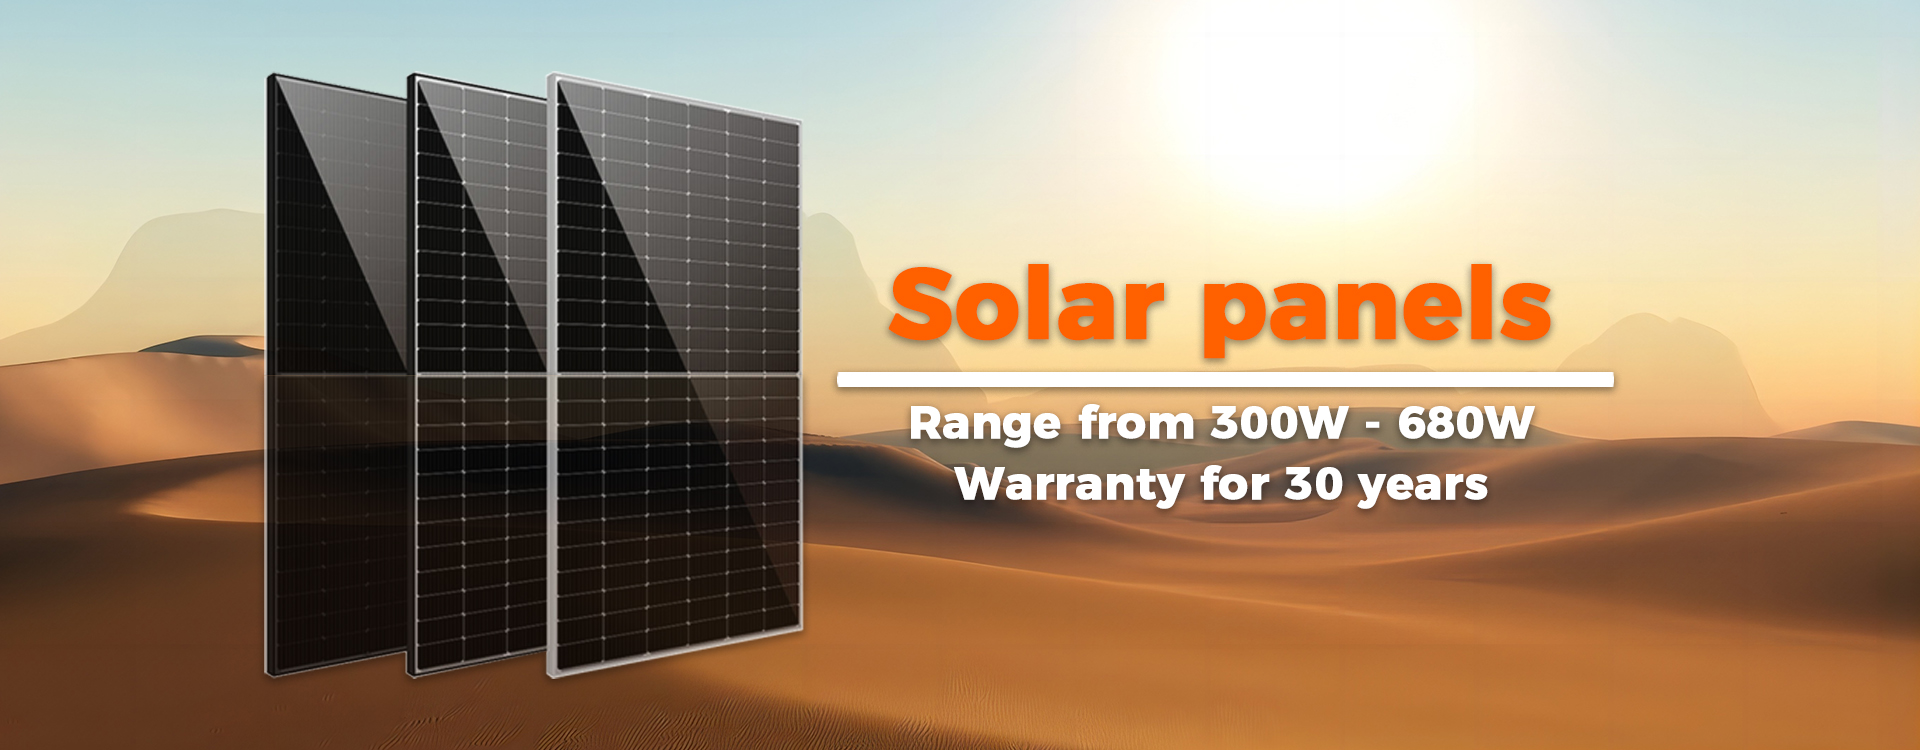 Plaques solars fotovoltaiques